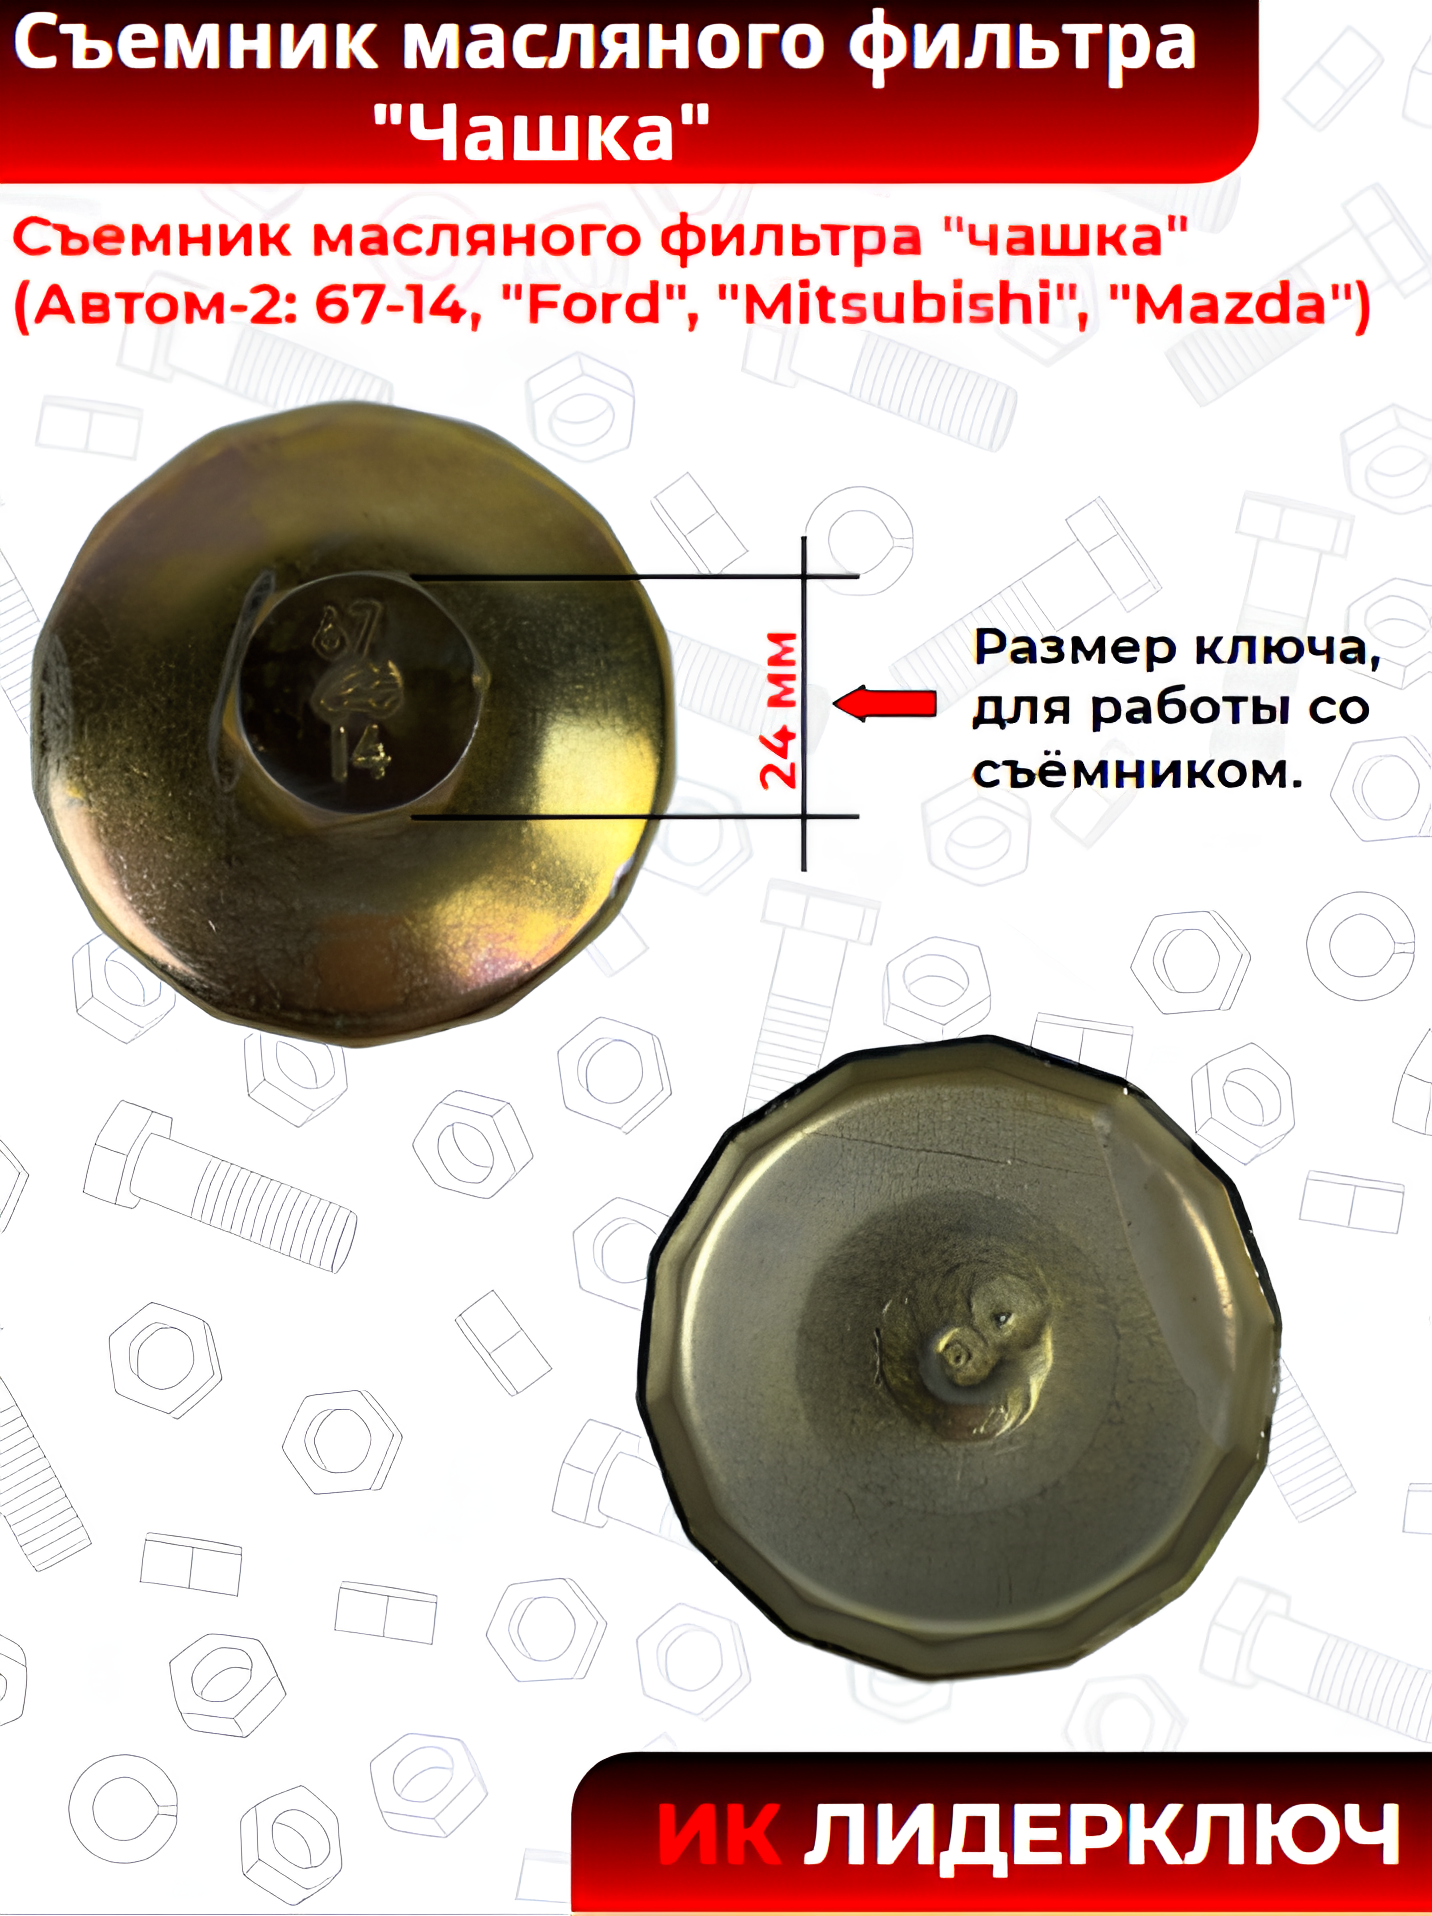 Съемник масляного фильтра "чашка" (Автом-2: 67-14, "Ford", "Mitsubishi", "Mazda")